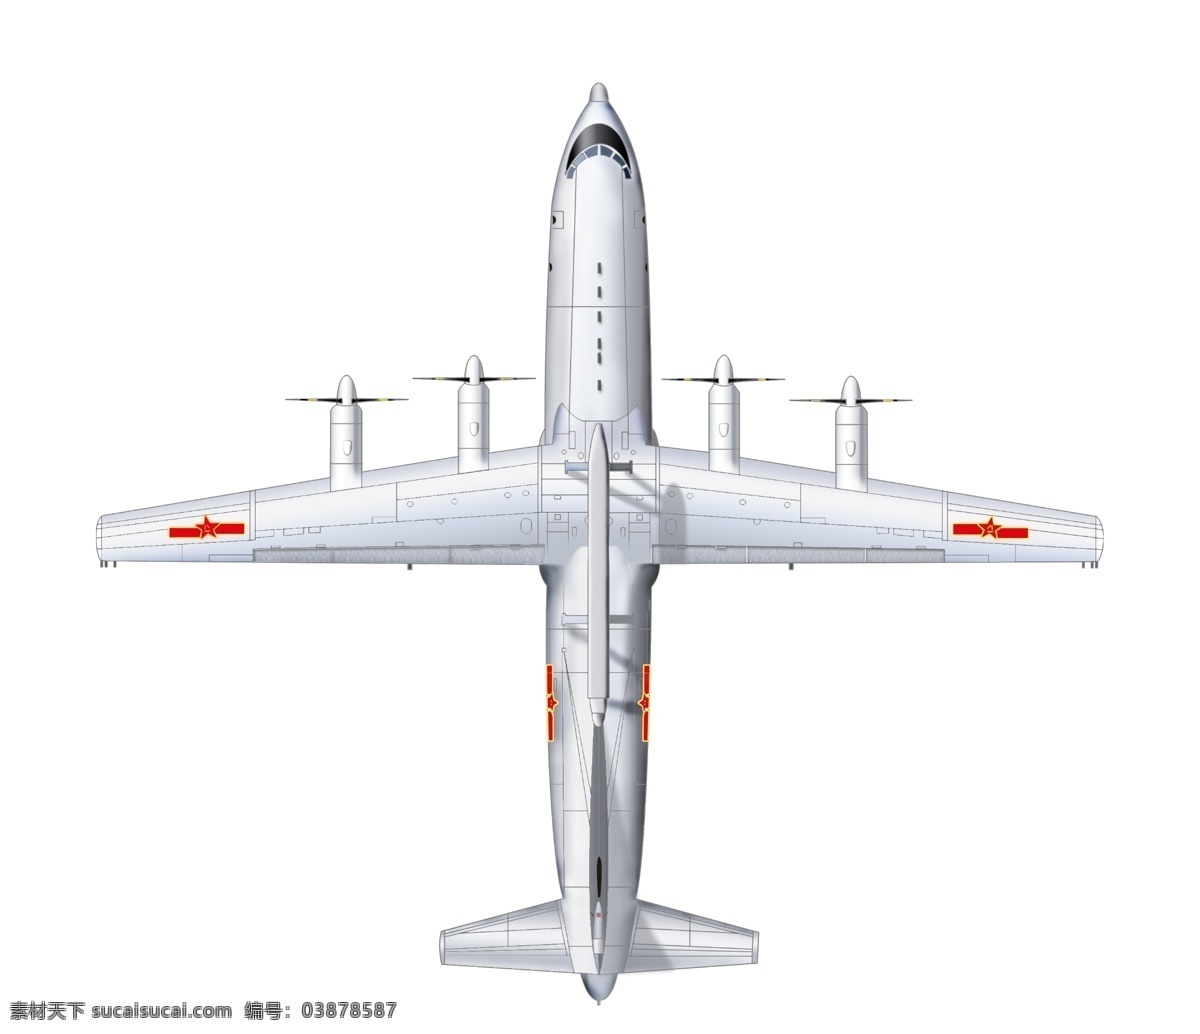 3d设计模型 产品设计 飞机 图层 源文件 战斗机 中国 新型 空中 预警机 其他模型 工业 陈琳 珊 作品 3d模型素材 其他3d模型